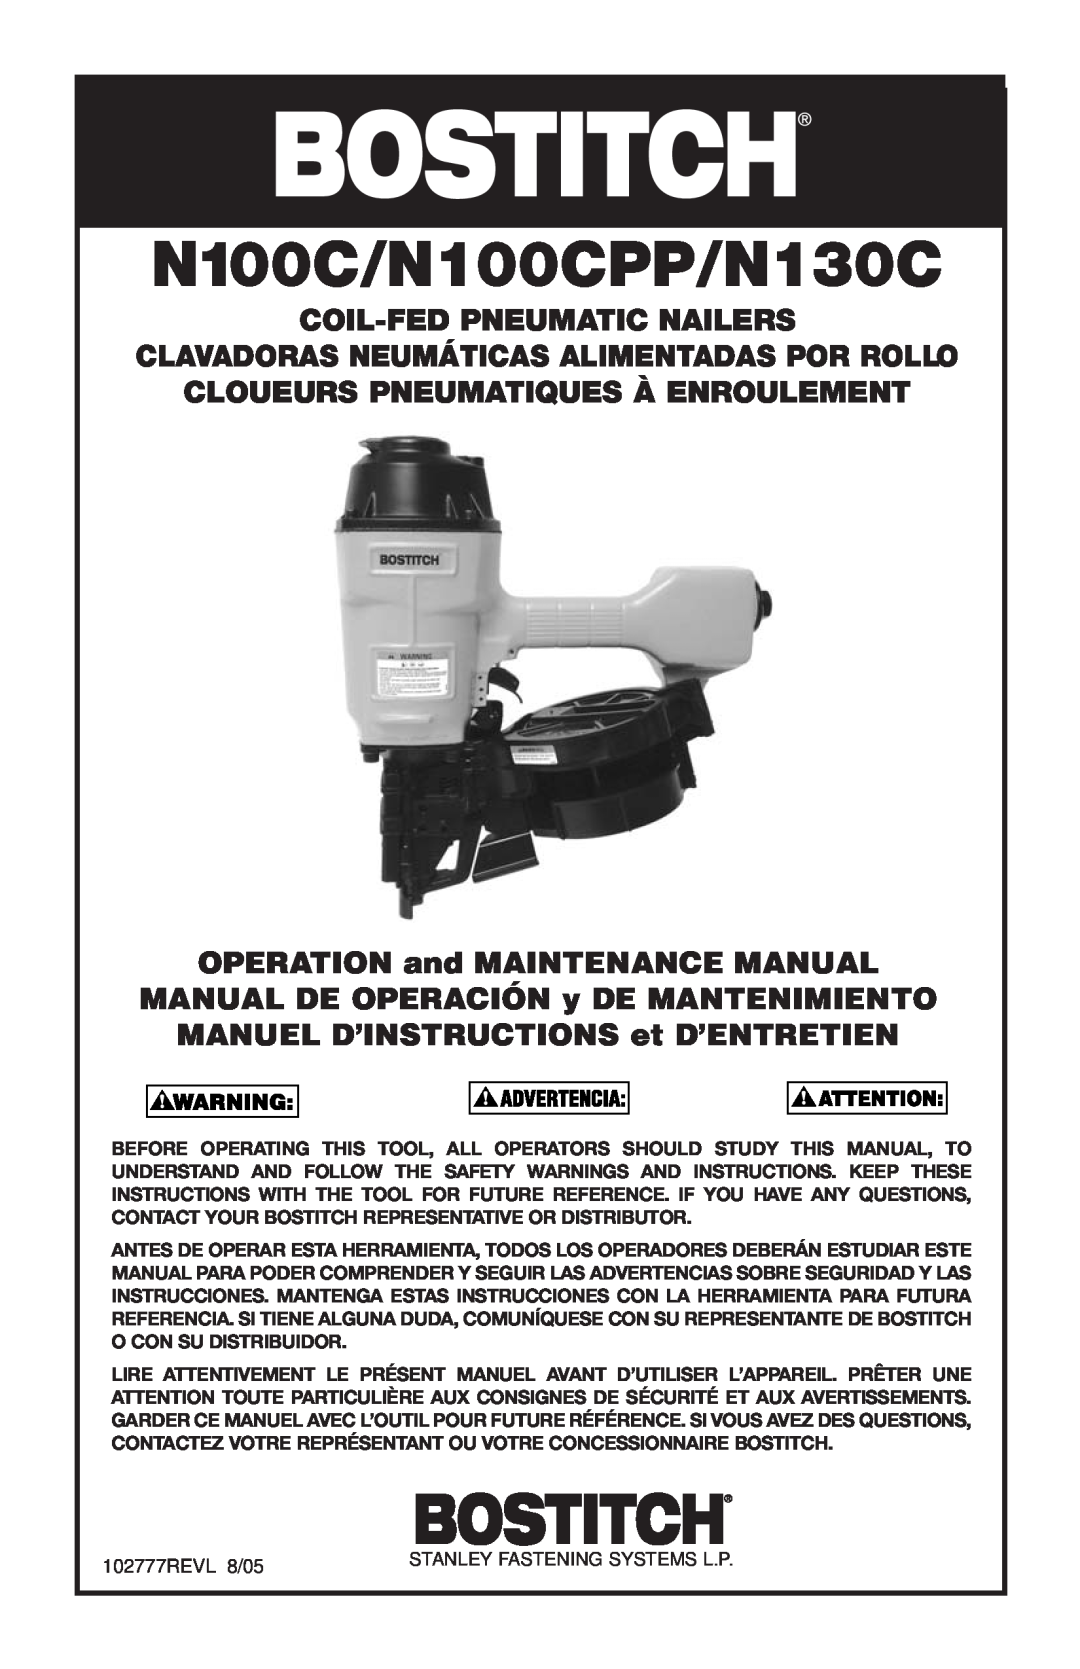 Bostitch manual OPERATION and MAINTENANCE MANUAL, MANUAL DE OPERACIÓN y DE MANTENIMIENTO, N100C/N100CPP/N130C 